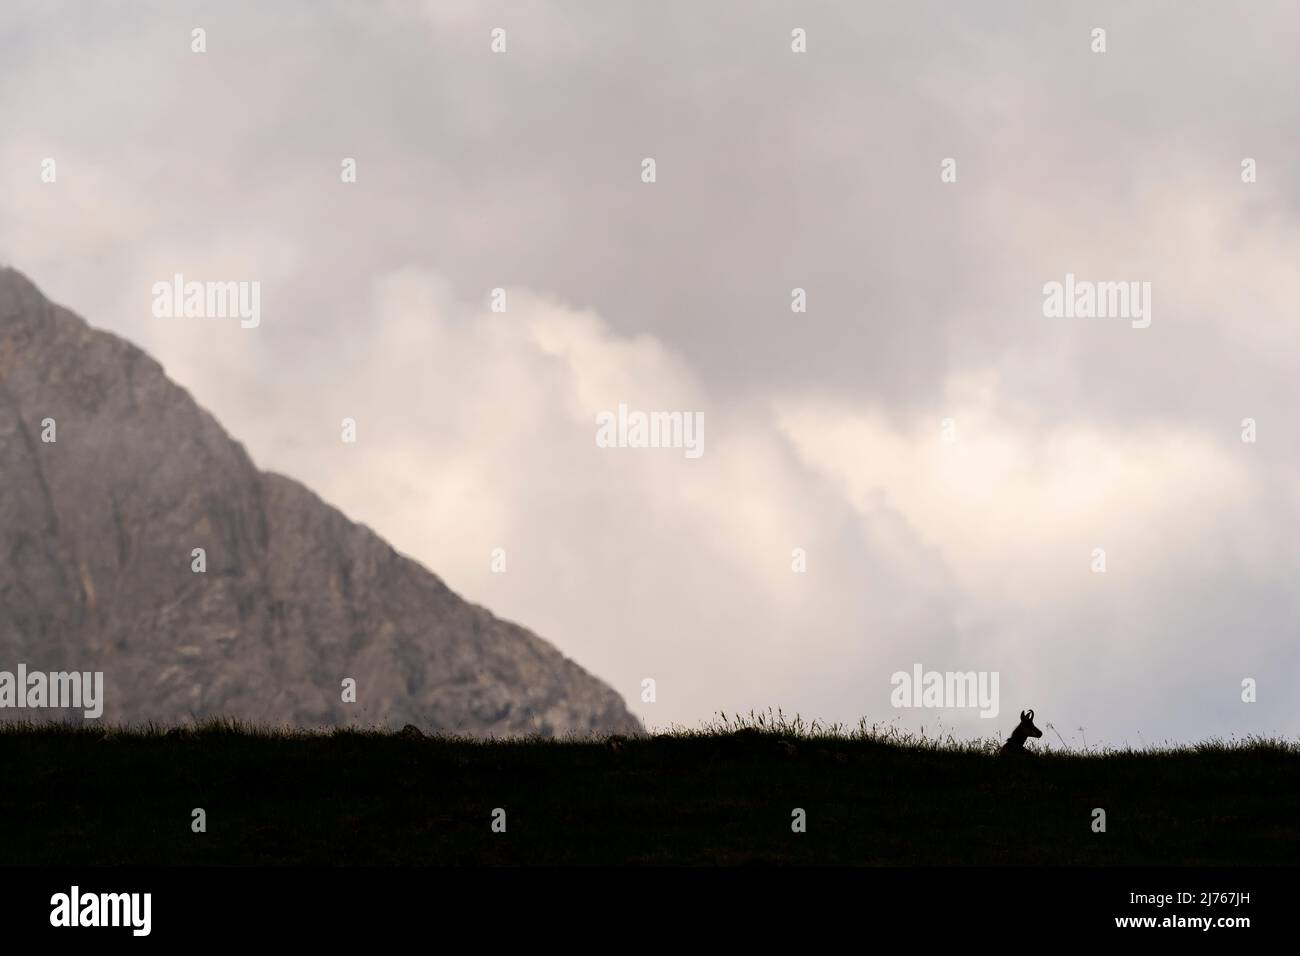 Un chamois regarde à droite, en arrière-plan, des nuages denses et une crête de montagne Banque D'Images